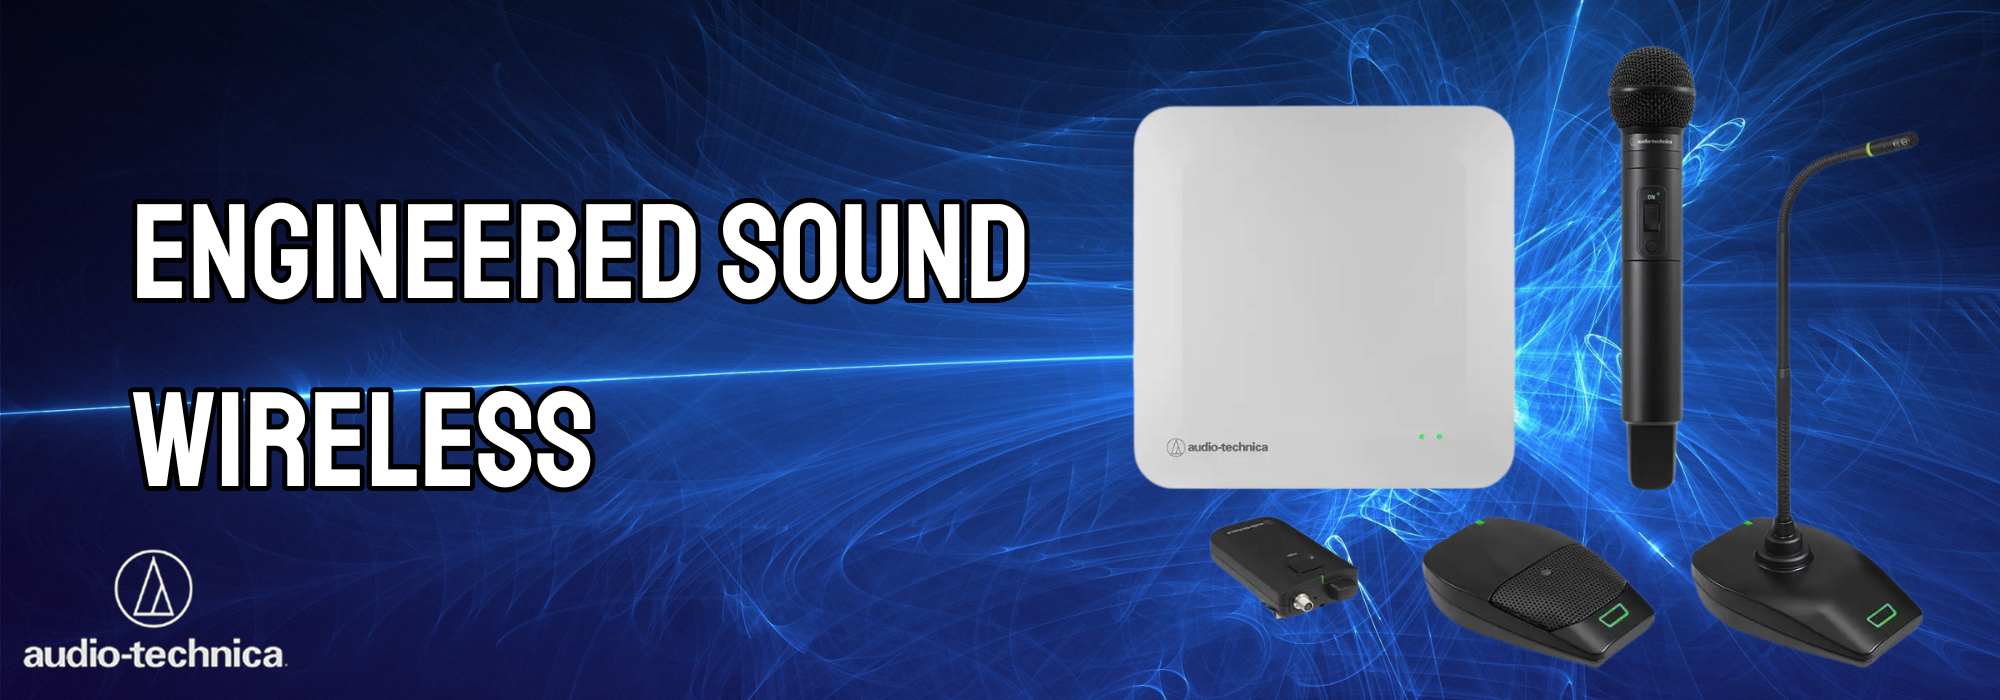 Engineered Sound Wireless